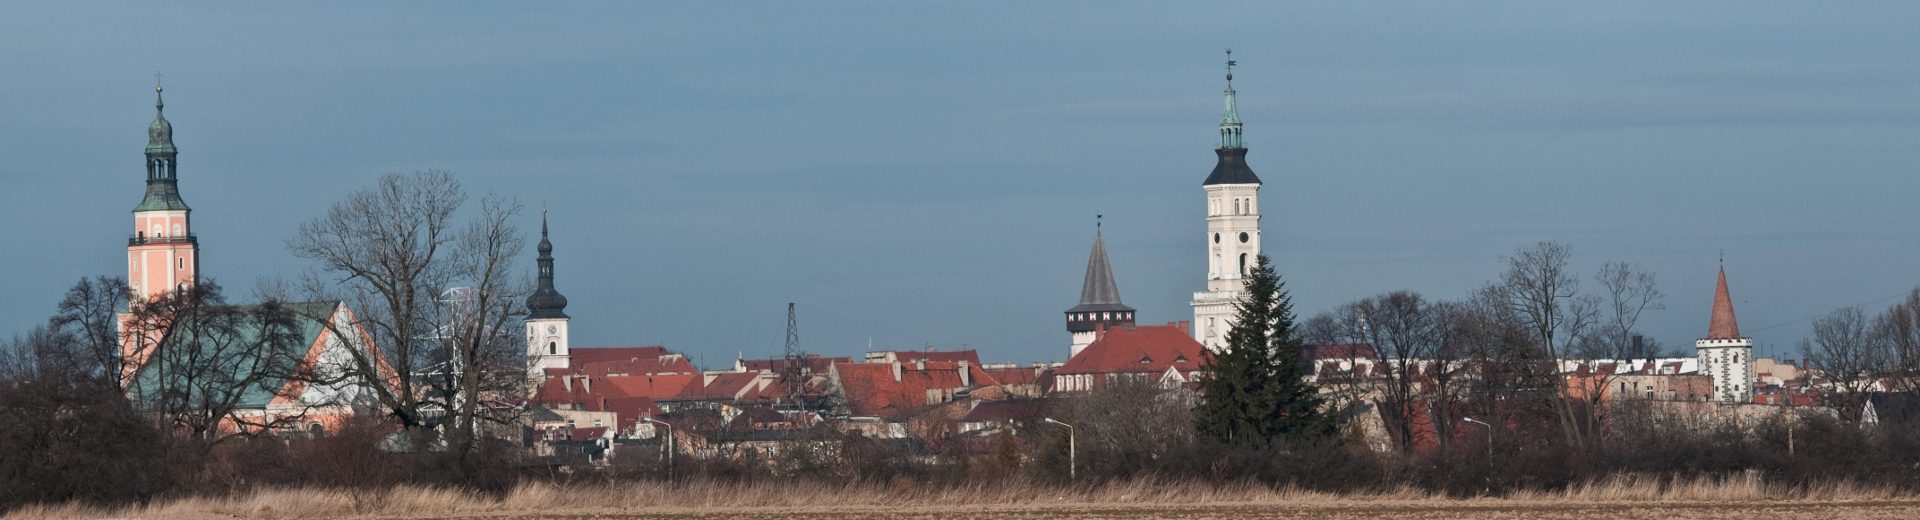 Bonifratrzy – Klasztor w Prudniku pw. św. Piotra i Pawła